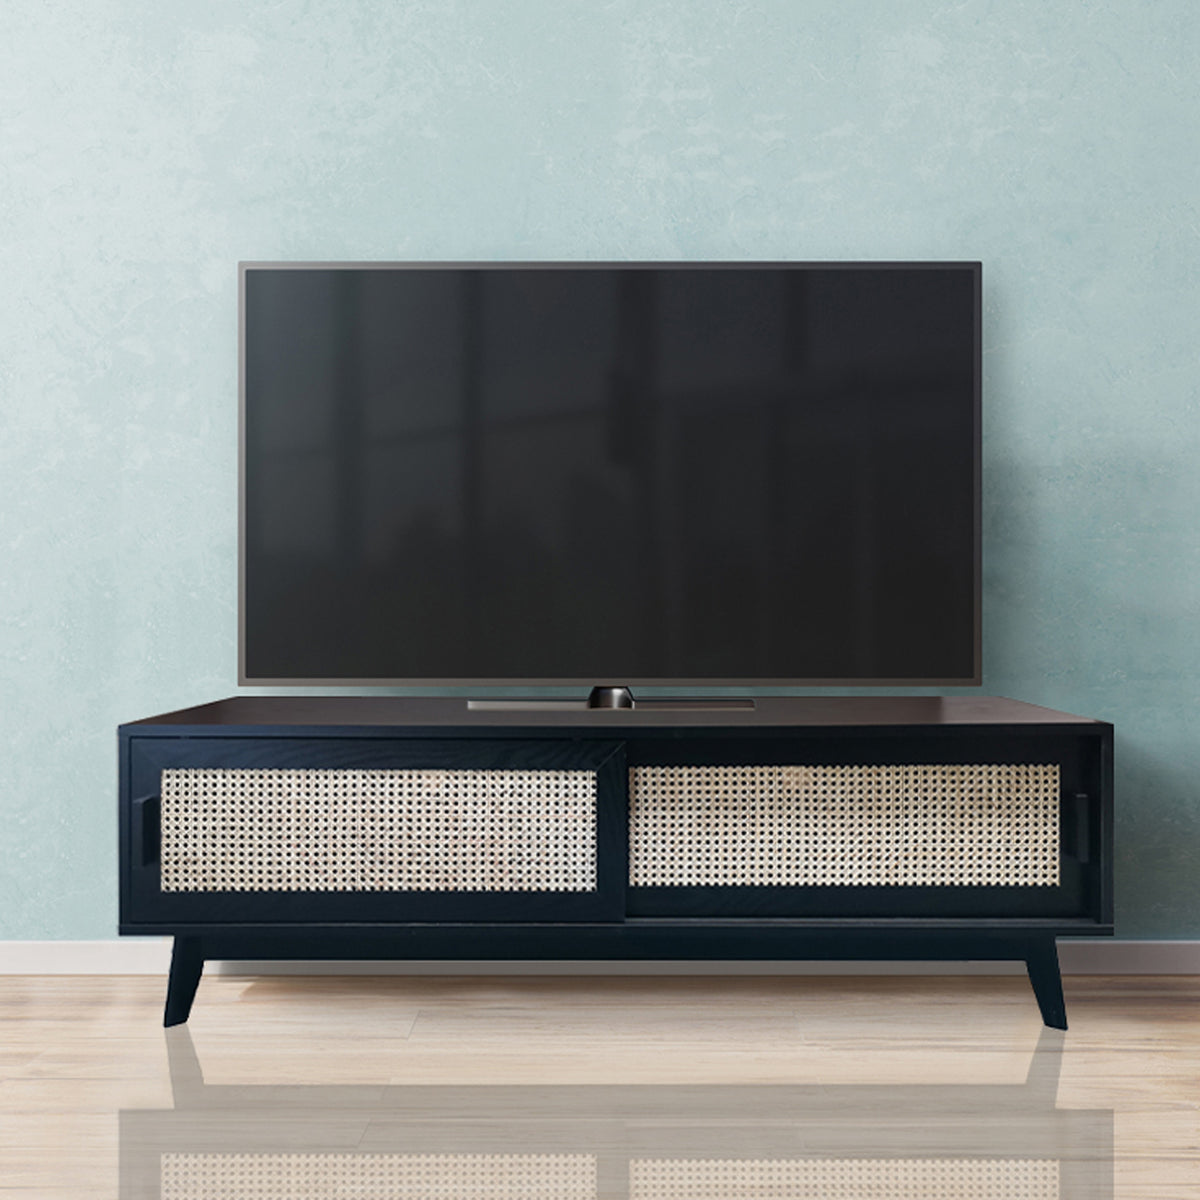 Lennox 150cm Black TV Stand for living room